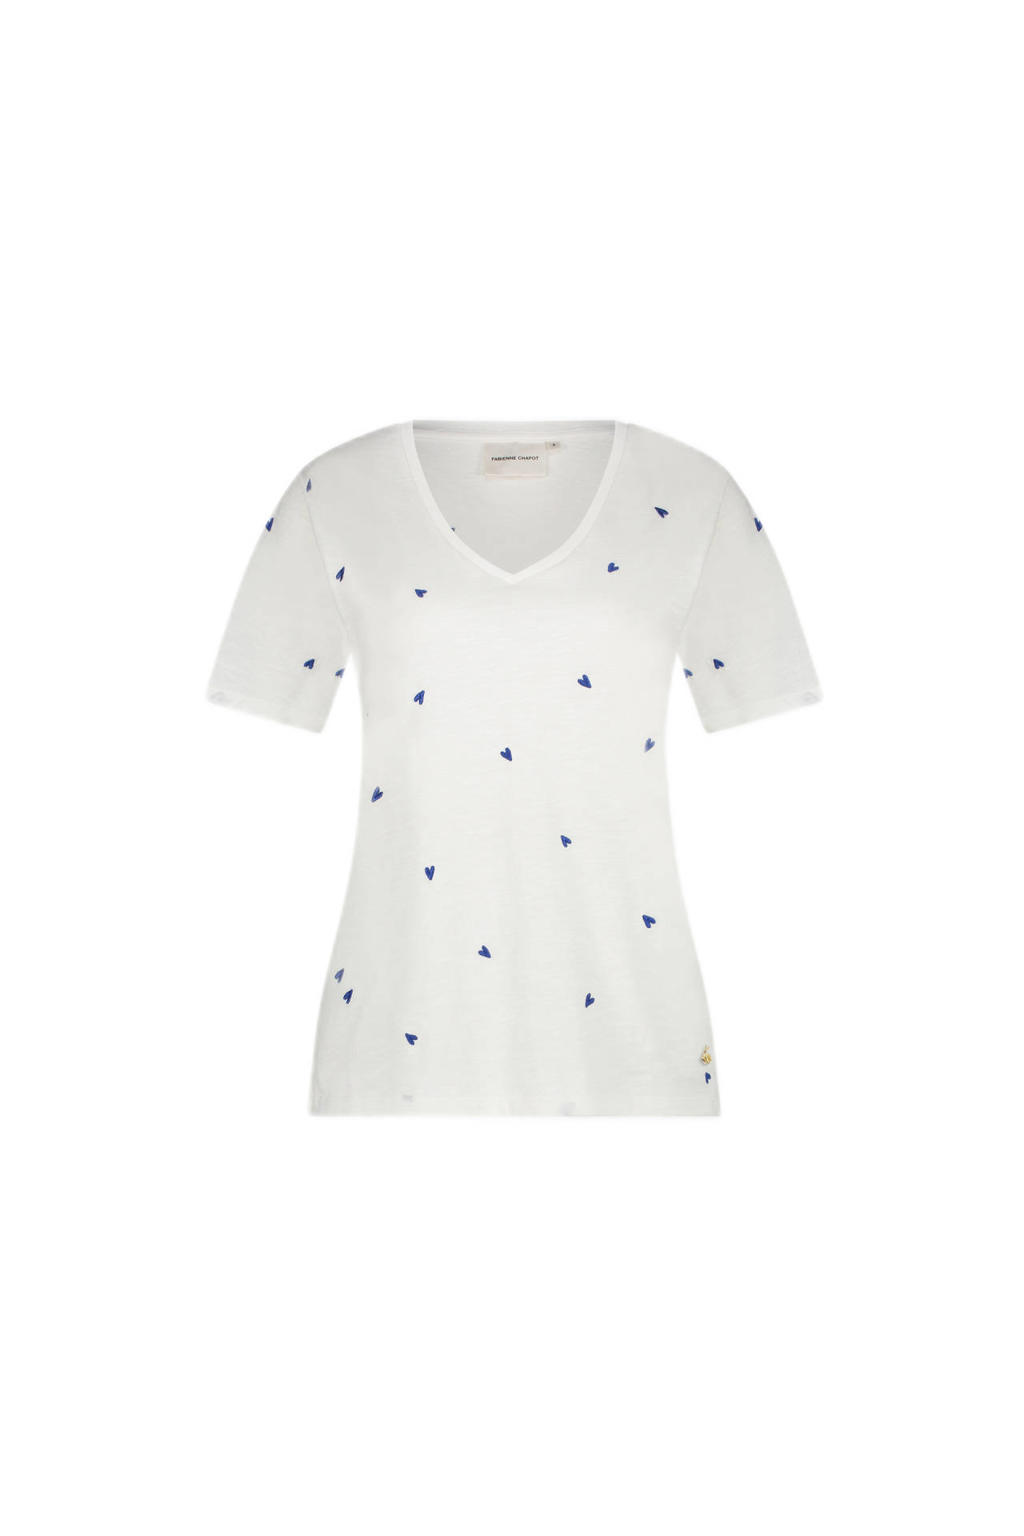 Fabienne Chapot T-shirt Phil met hartjes met broderie wit/blauw | wehkamp